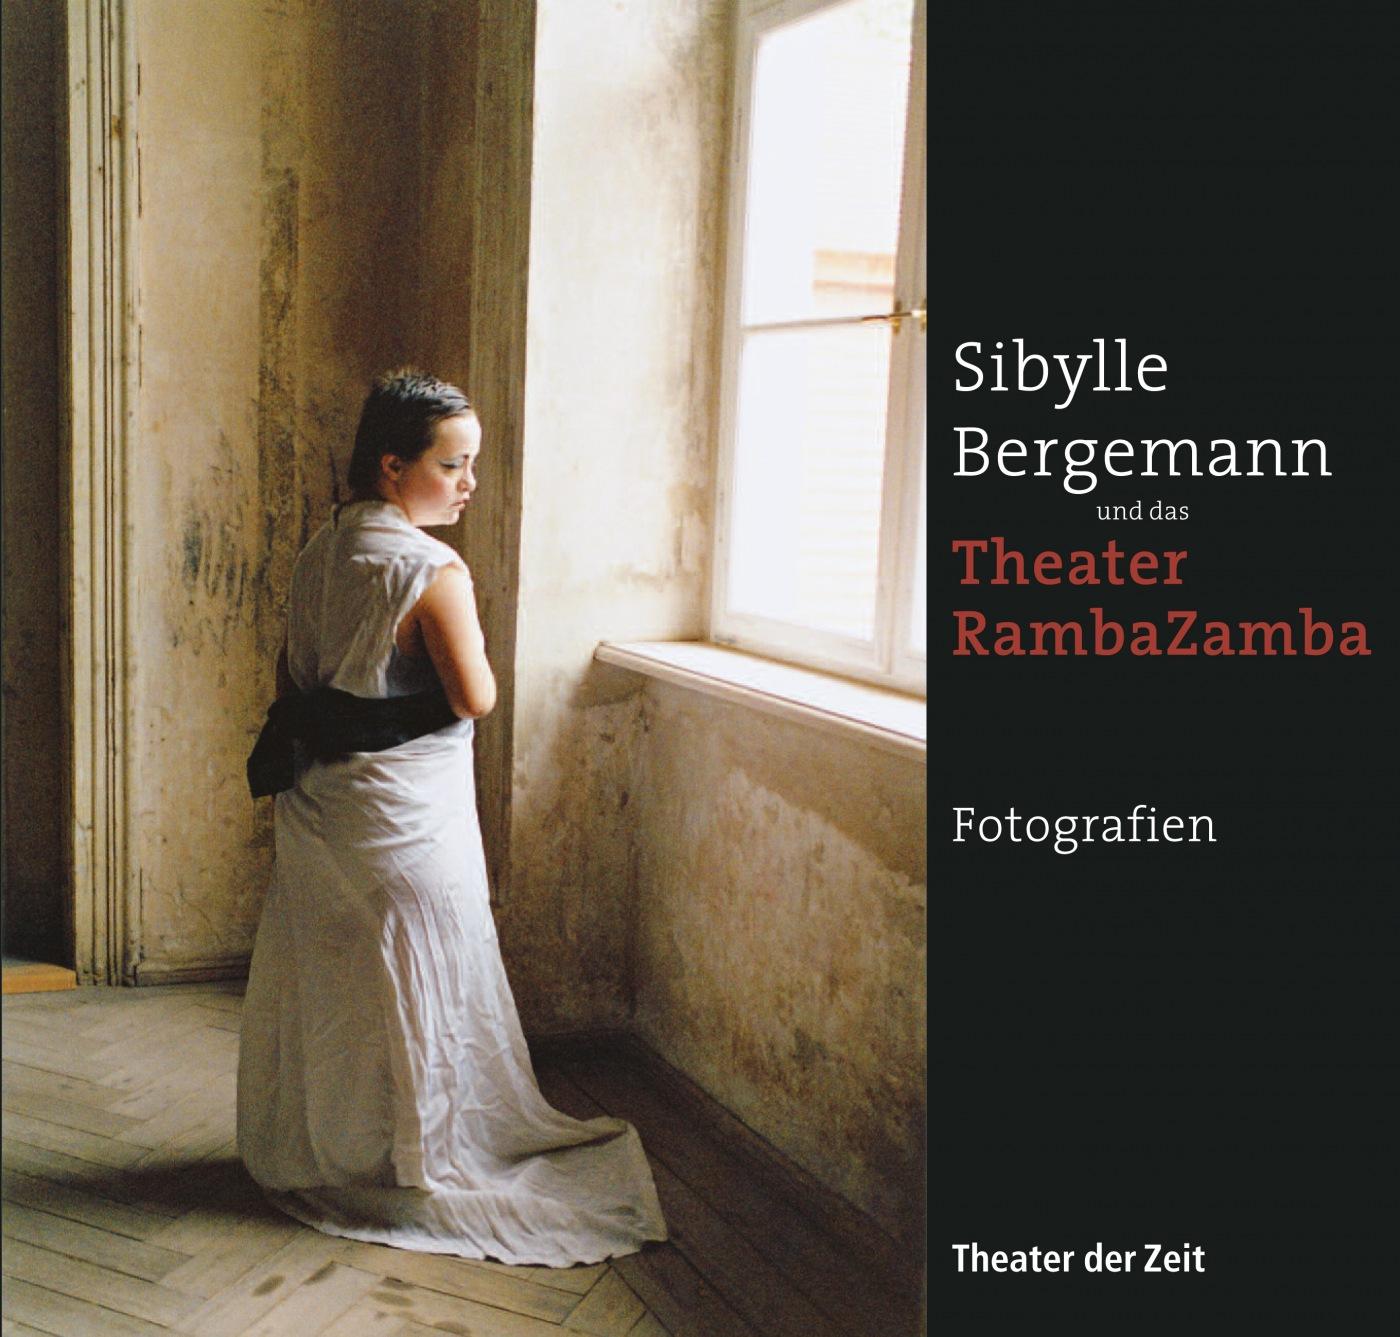 "Sibylle Bergemann und das Theater RambaZamba"